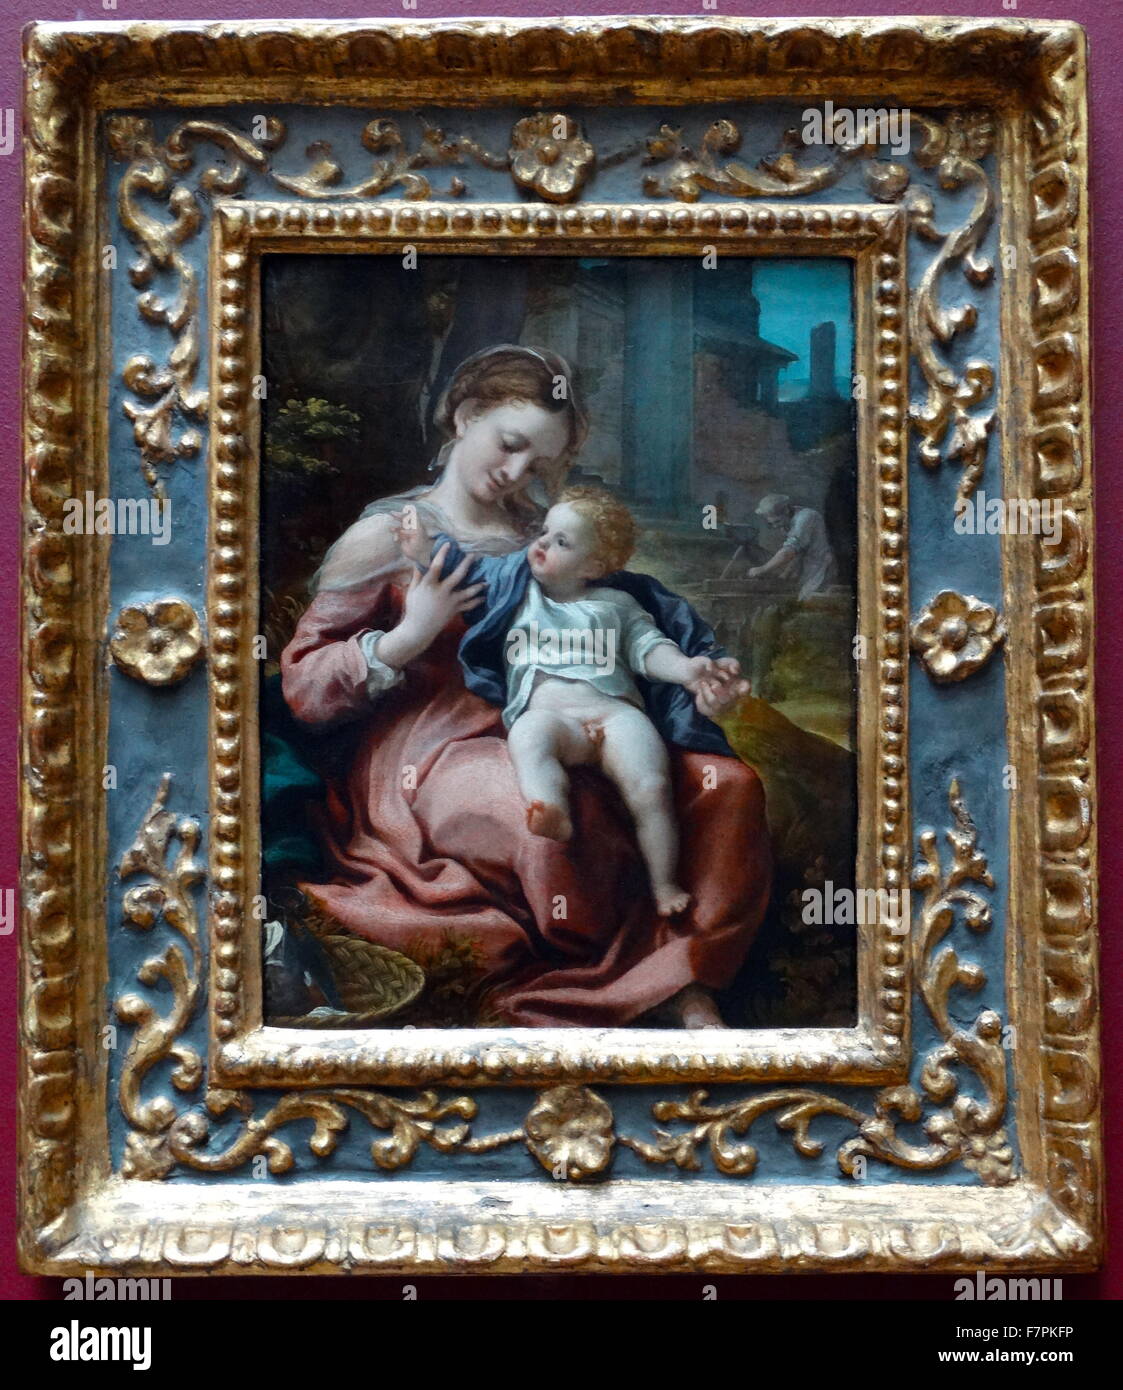 Gemälde mit dem Titel "Die Madonna und den Korb" von Antonio da Correggio (1489-1534) Maler der Schule von Parma der italienischen Renaissance. Datiert aus dem 16. Jahrhundert Stockfoto